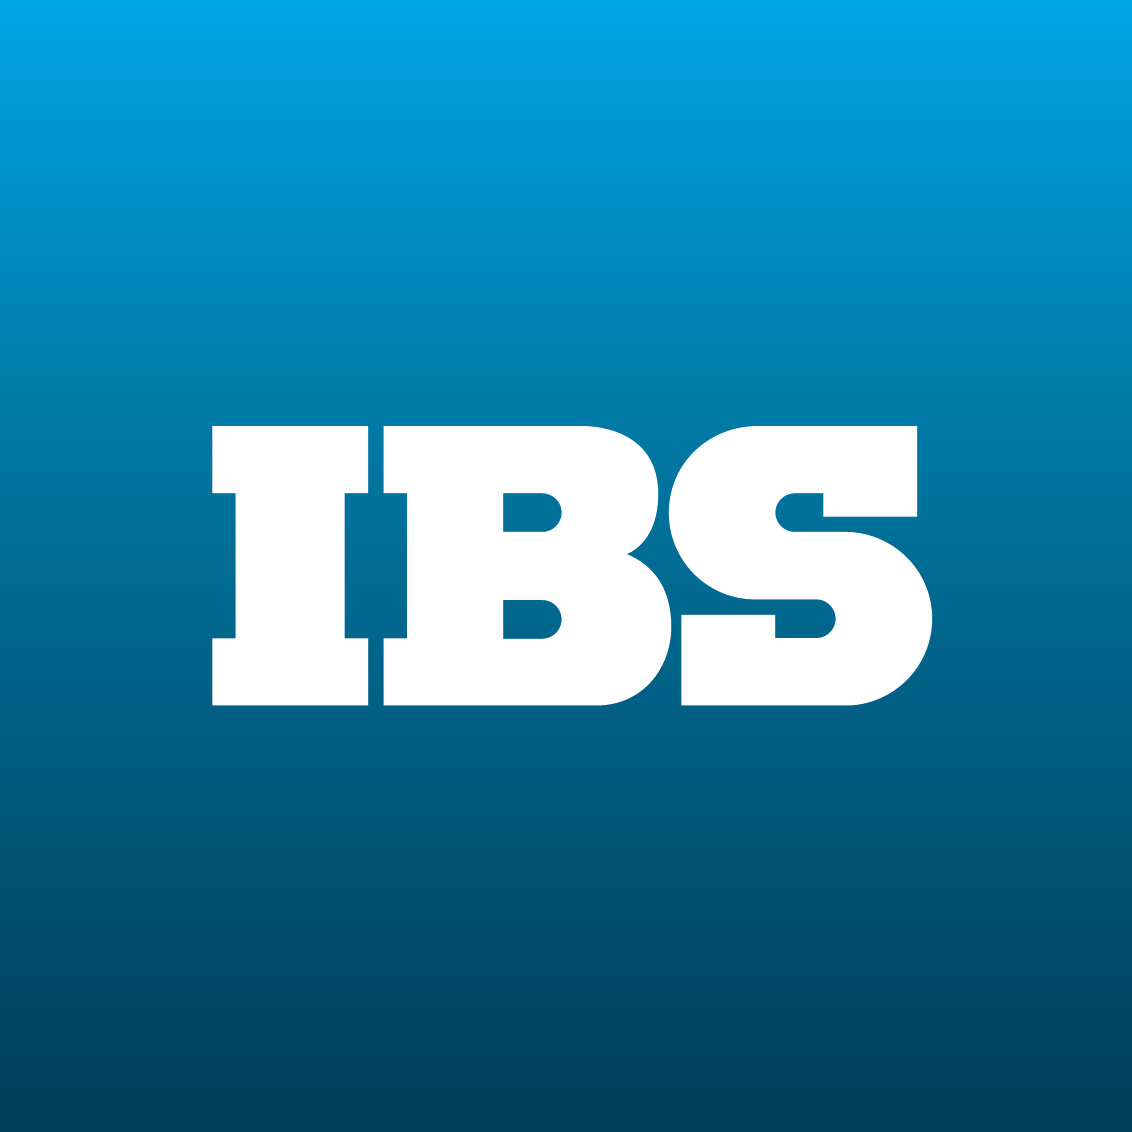 Ibs life. IBS групп. IBS логотип. IBS Platformix логотип. IBS логотип без фона.